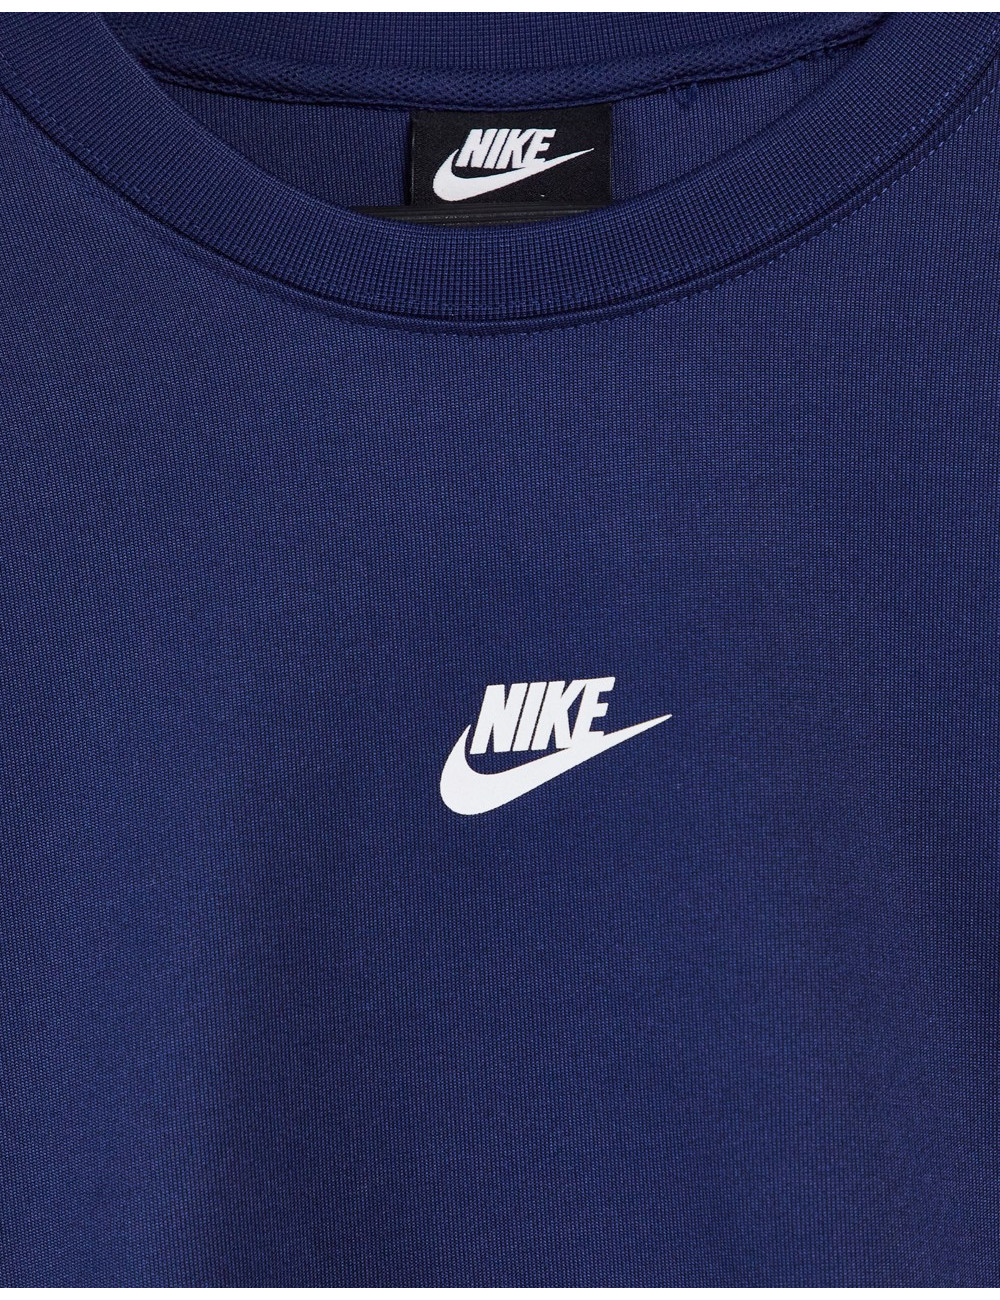 Nike sweatshirt in navy